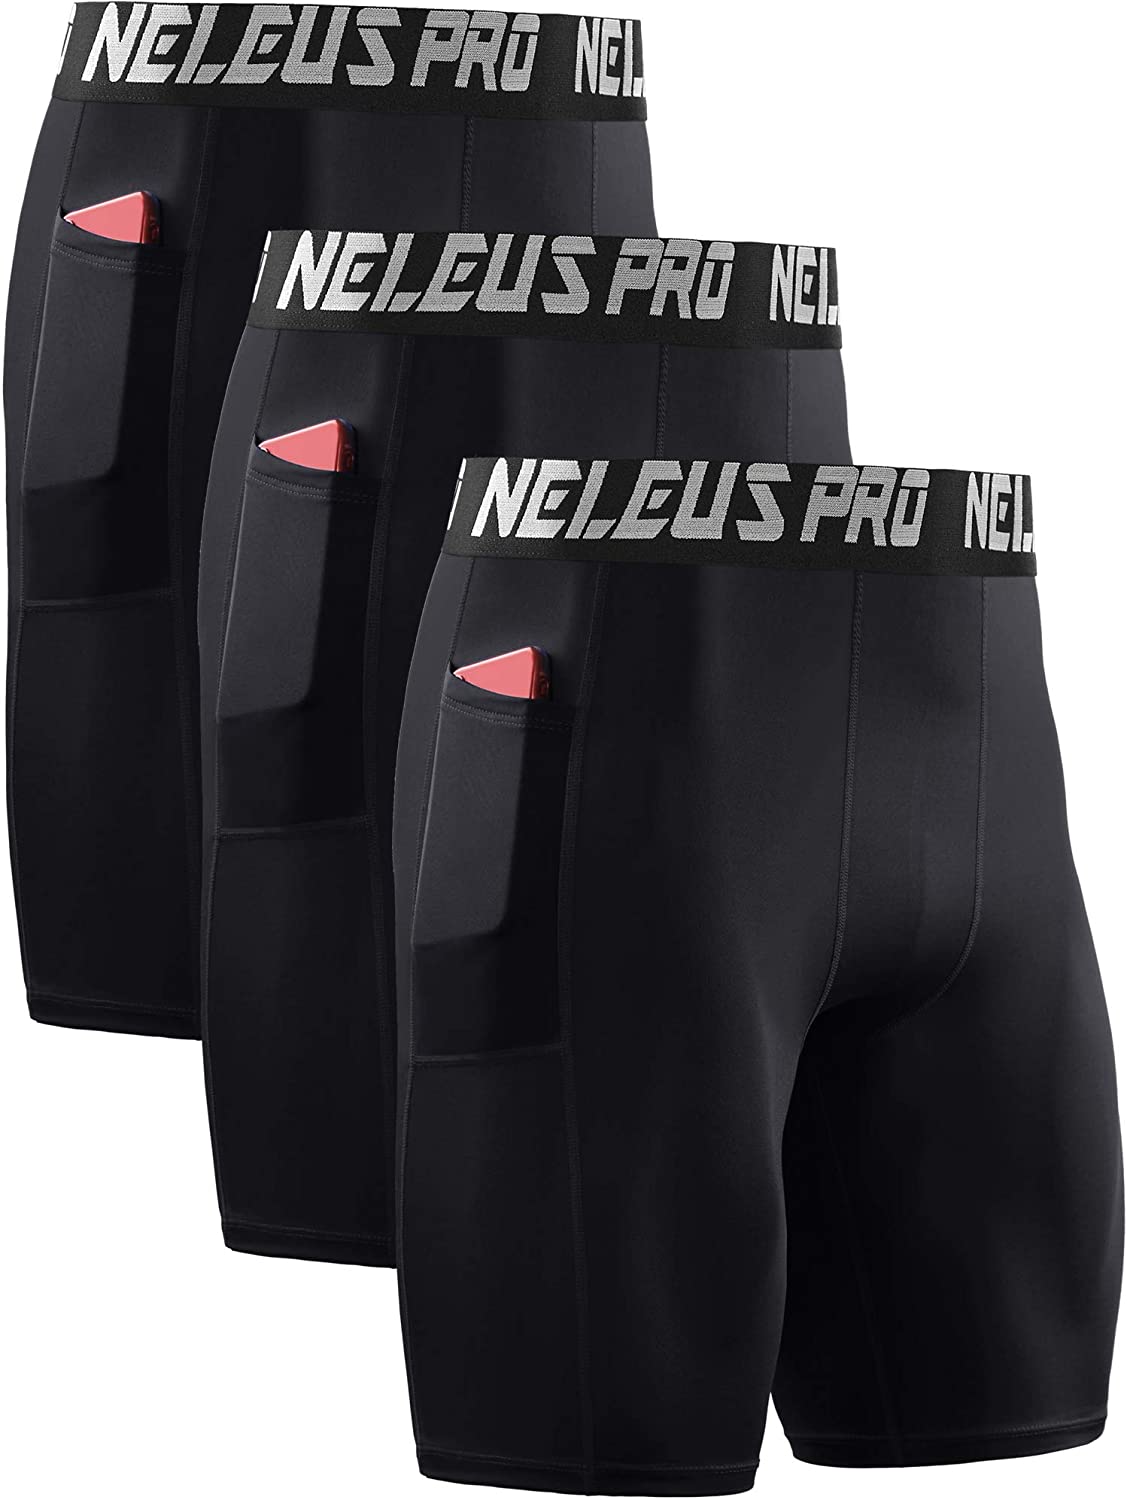 Neleus, Shorts, Neleus Biker Compression Shorts 3x Lot Of 3